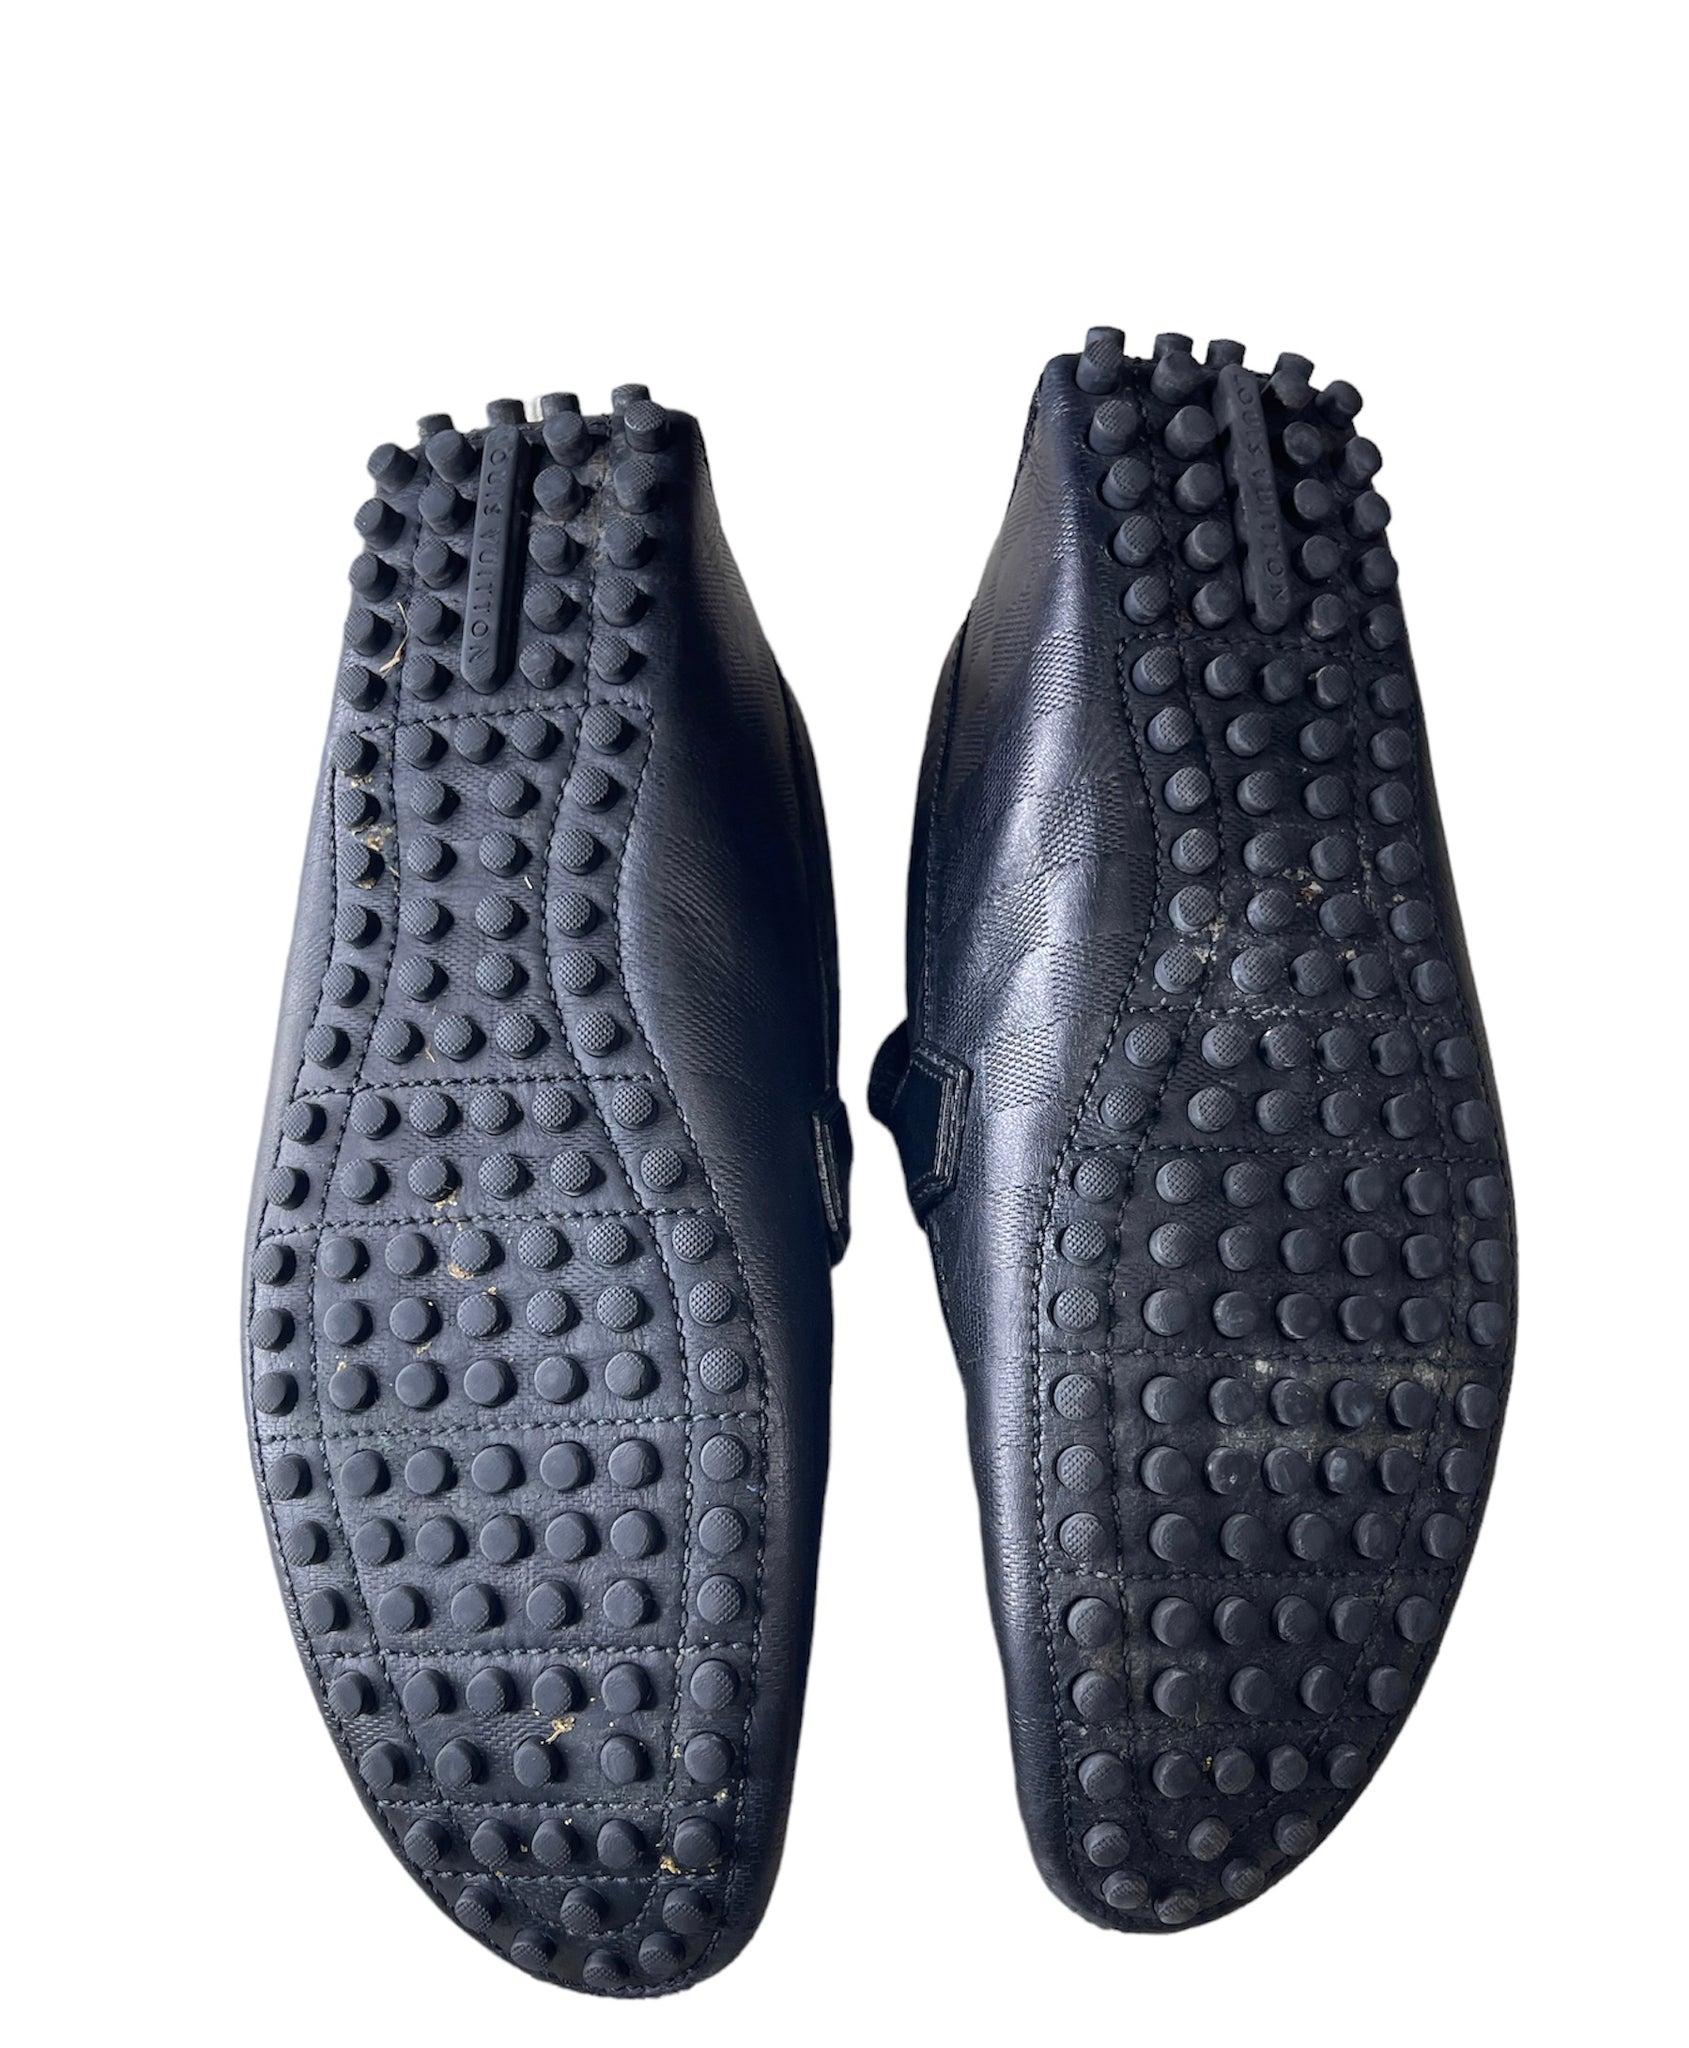 Louis Vuitton Black Men's Loafers – thankunext.us